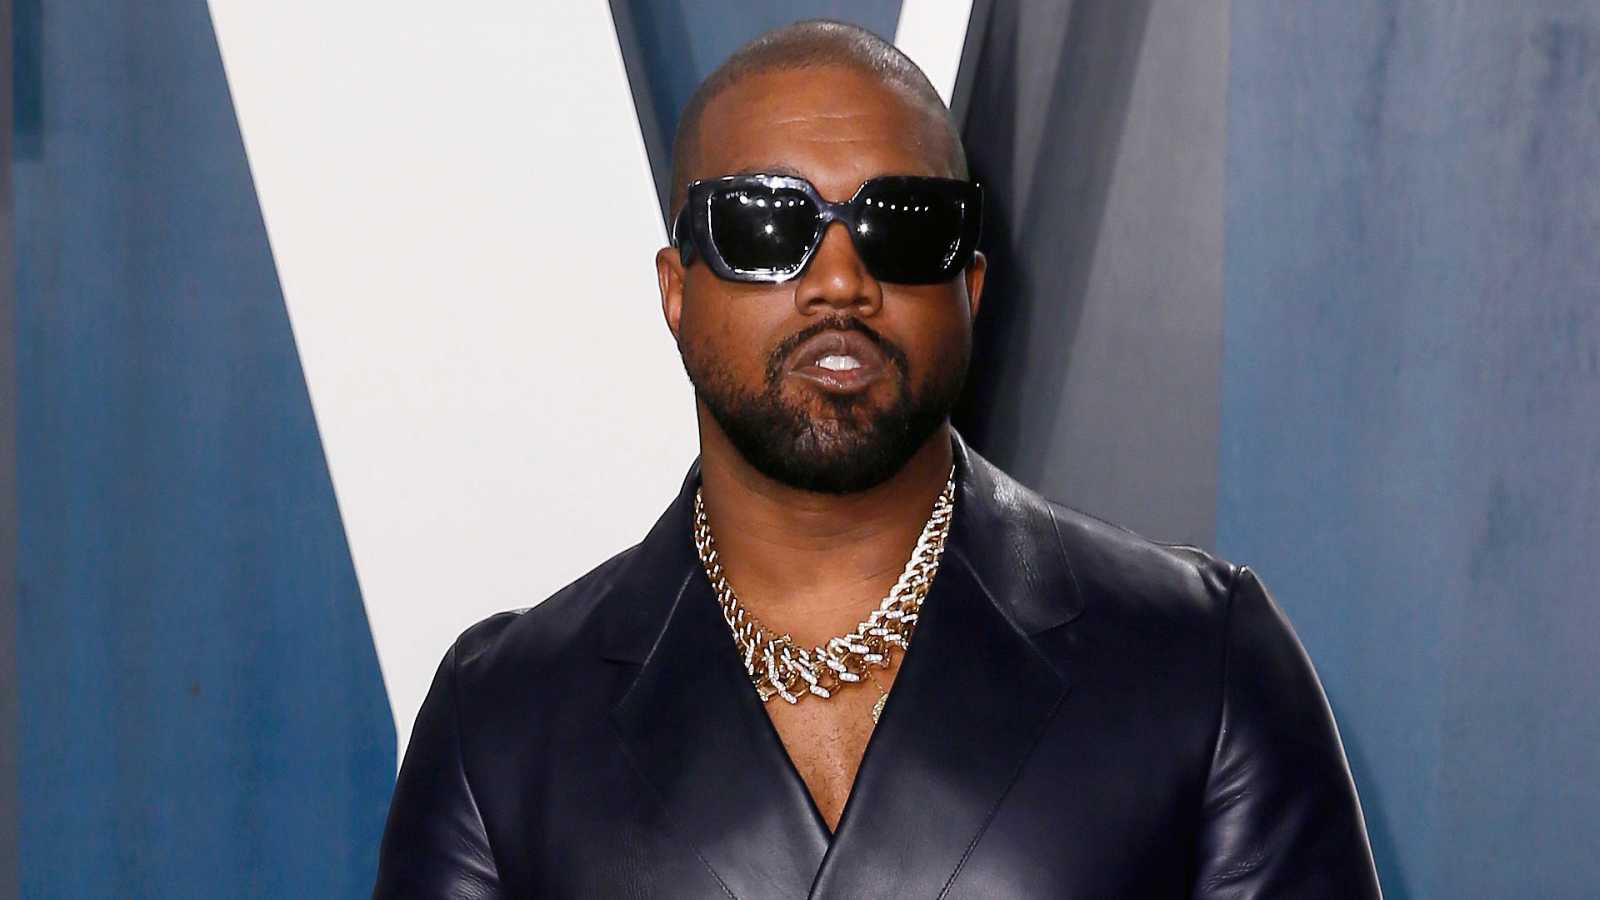 West kanye Kanye West’s